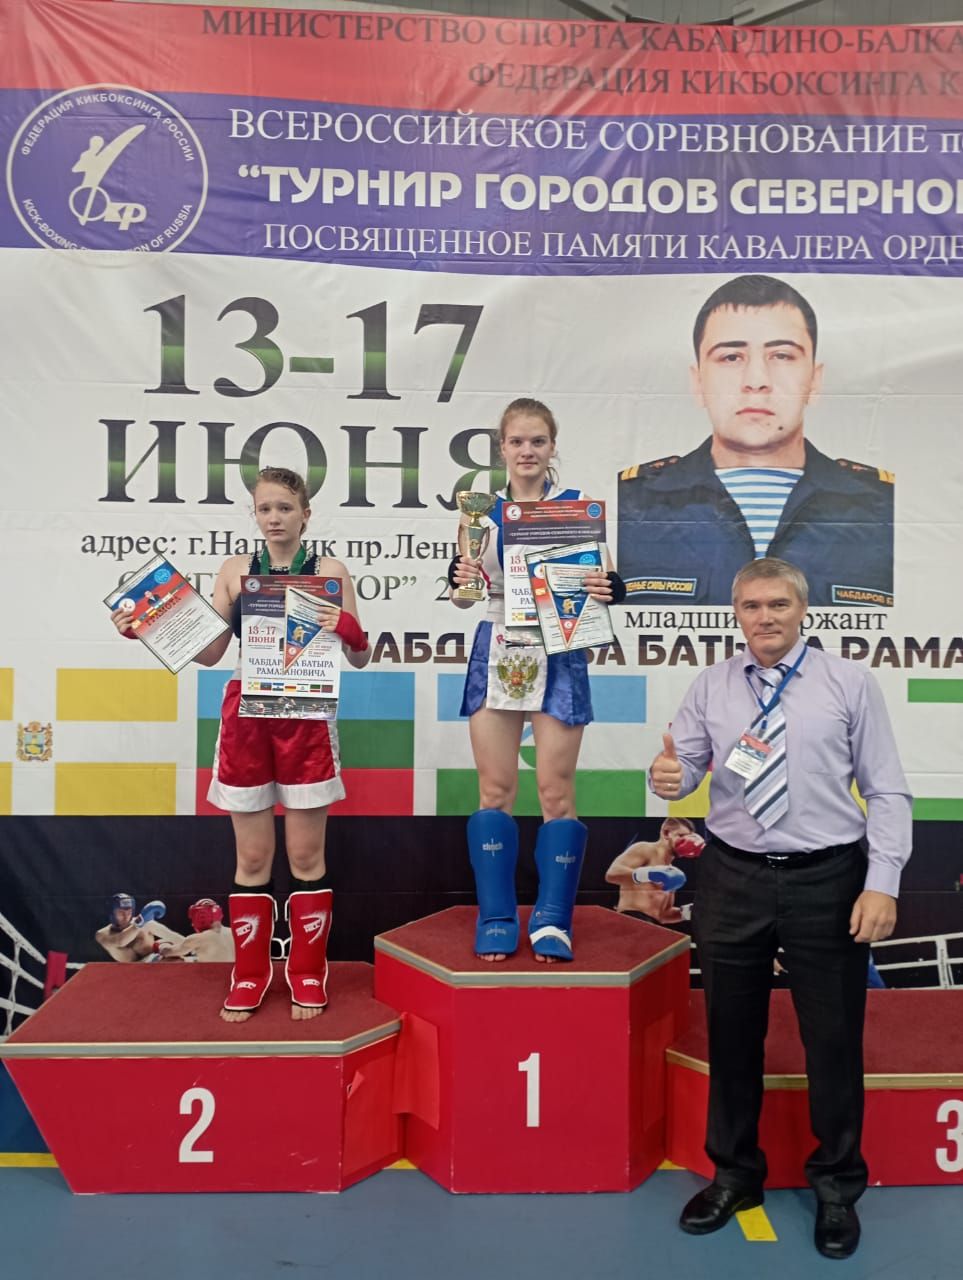 Кикбоксеры из Ставрополя заняли первое и второе место на Всероссийских соревнованиях. Фото: администрация Ставрополя  